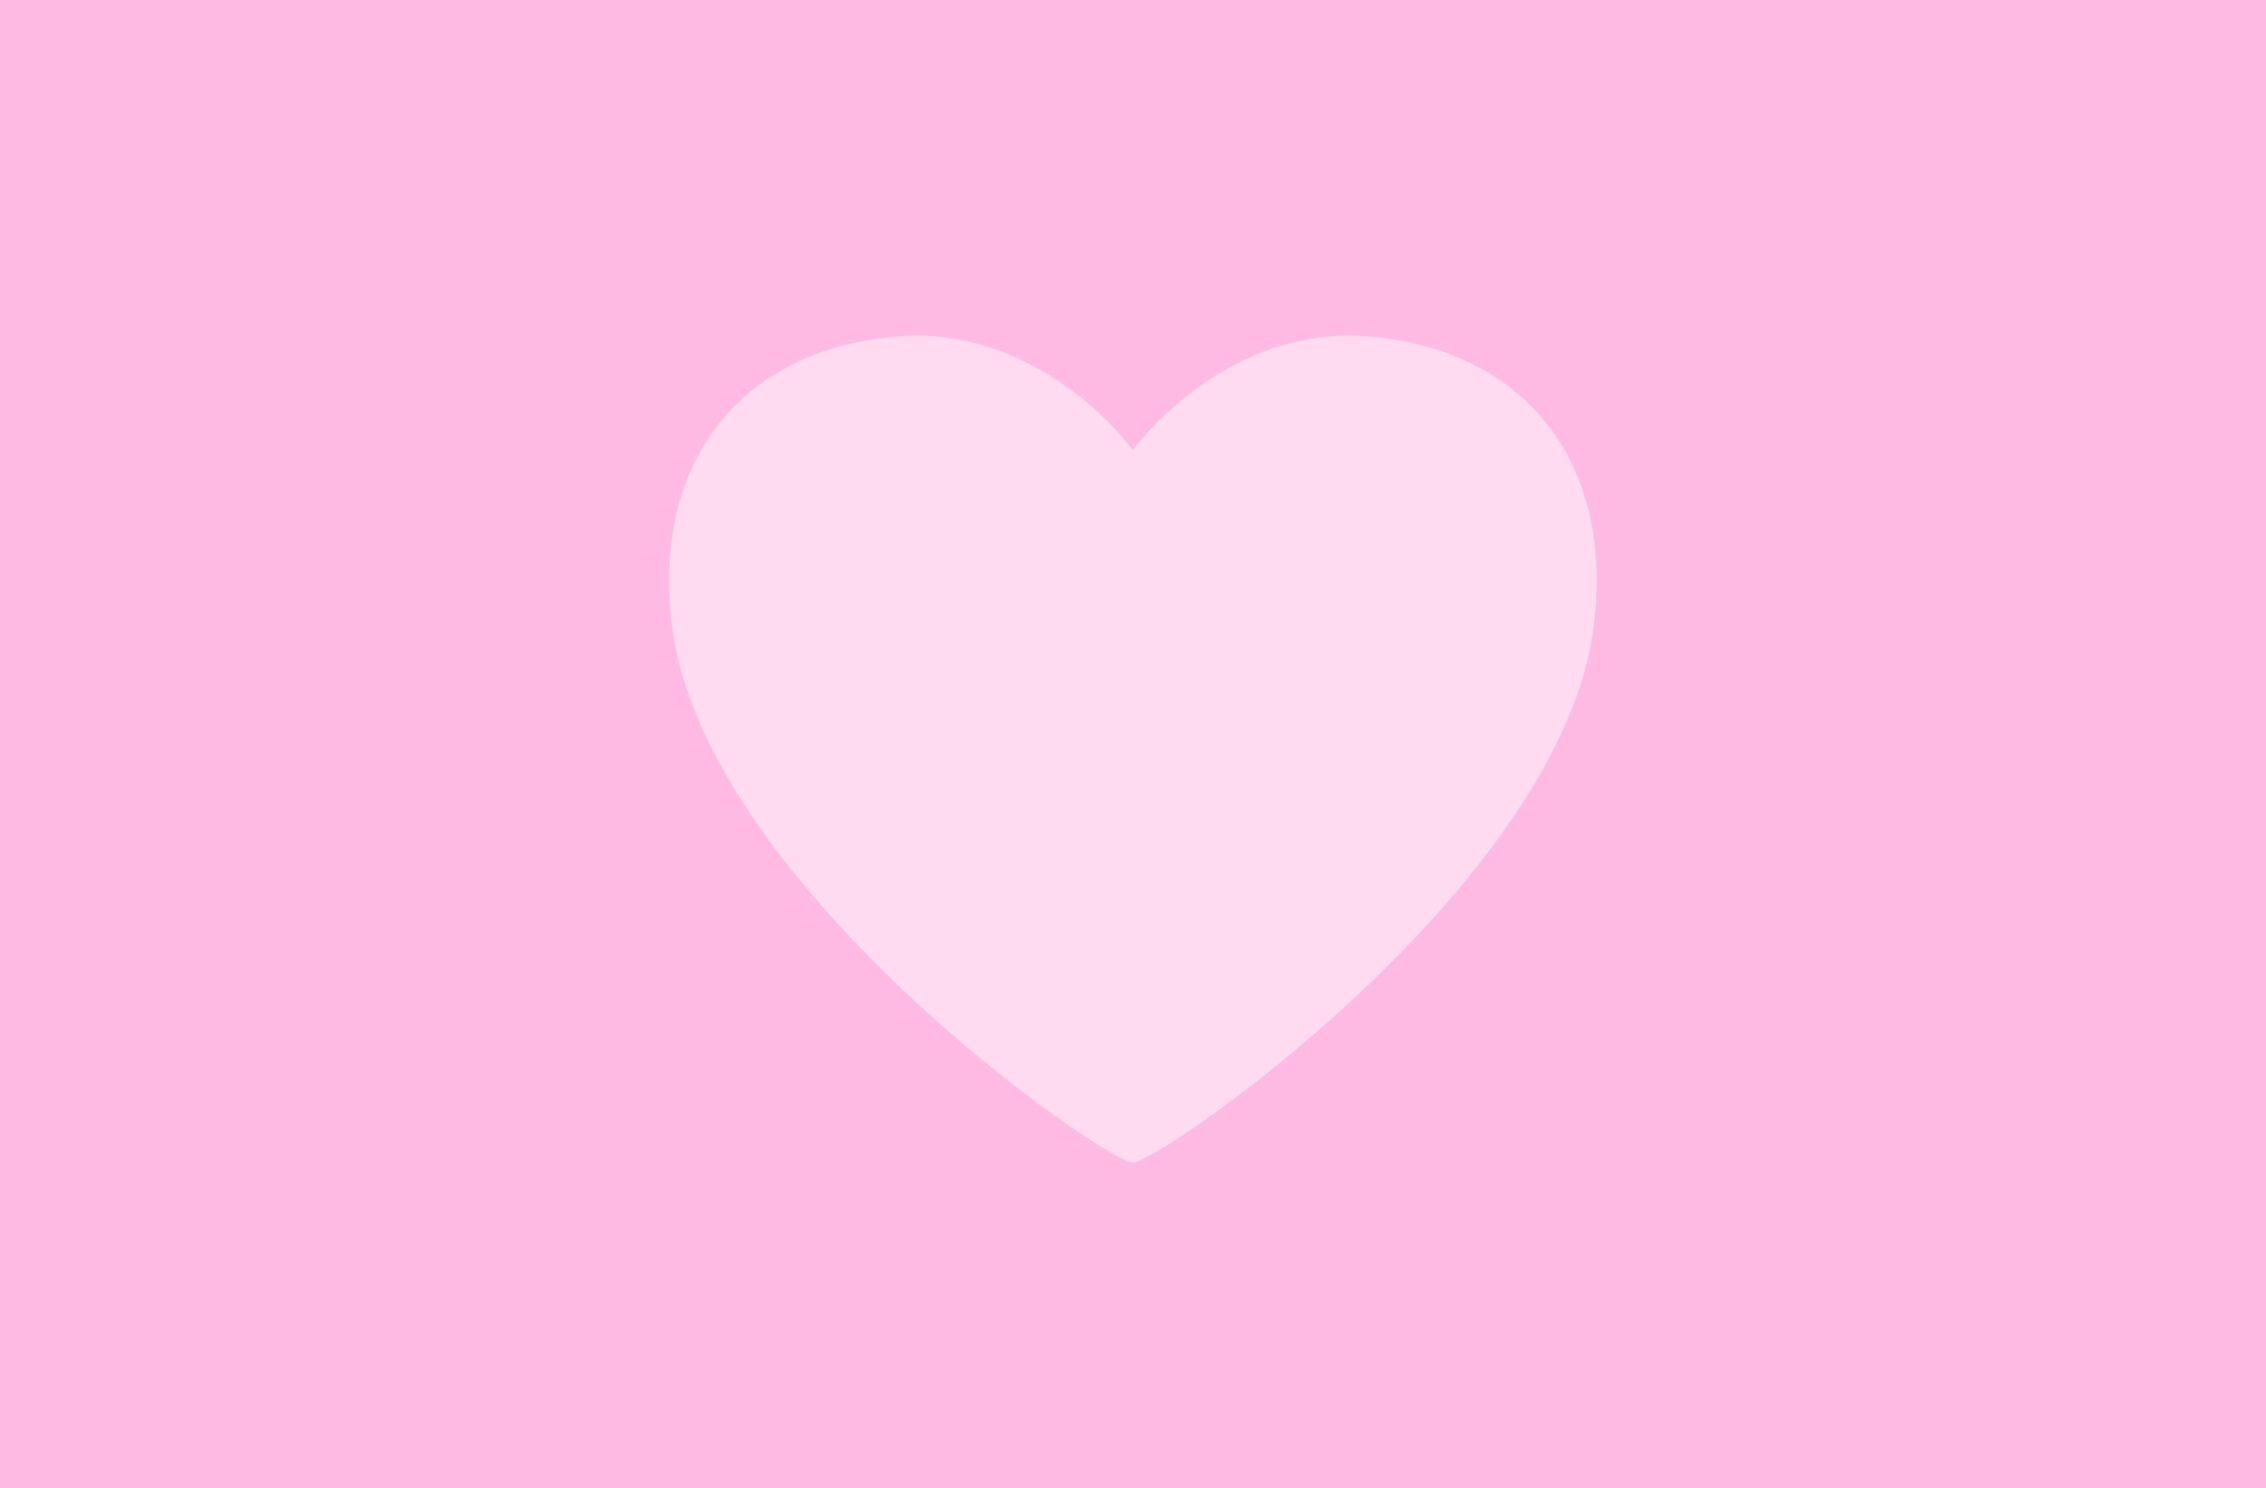 2266x1488 iPad Mini wallpapers Love Heart Pink Background iPad Wallpaper 2266x1488 pixels resolution